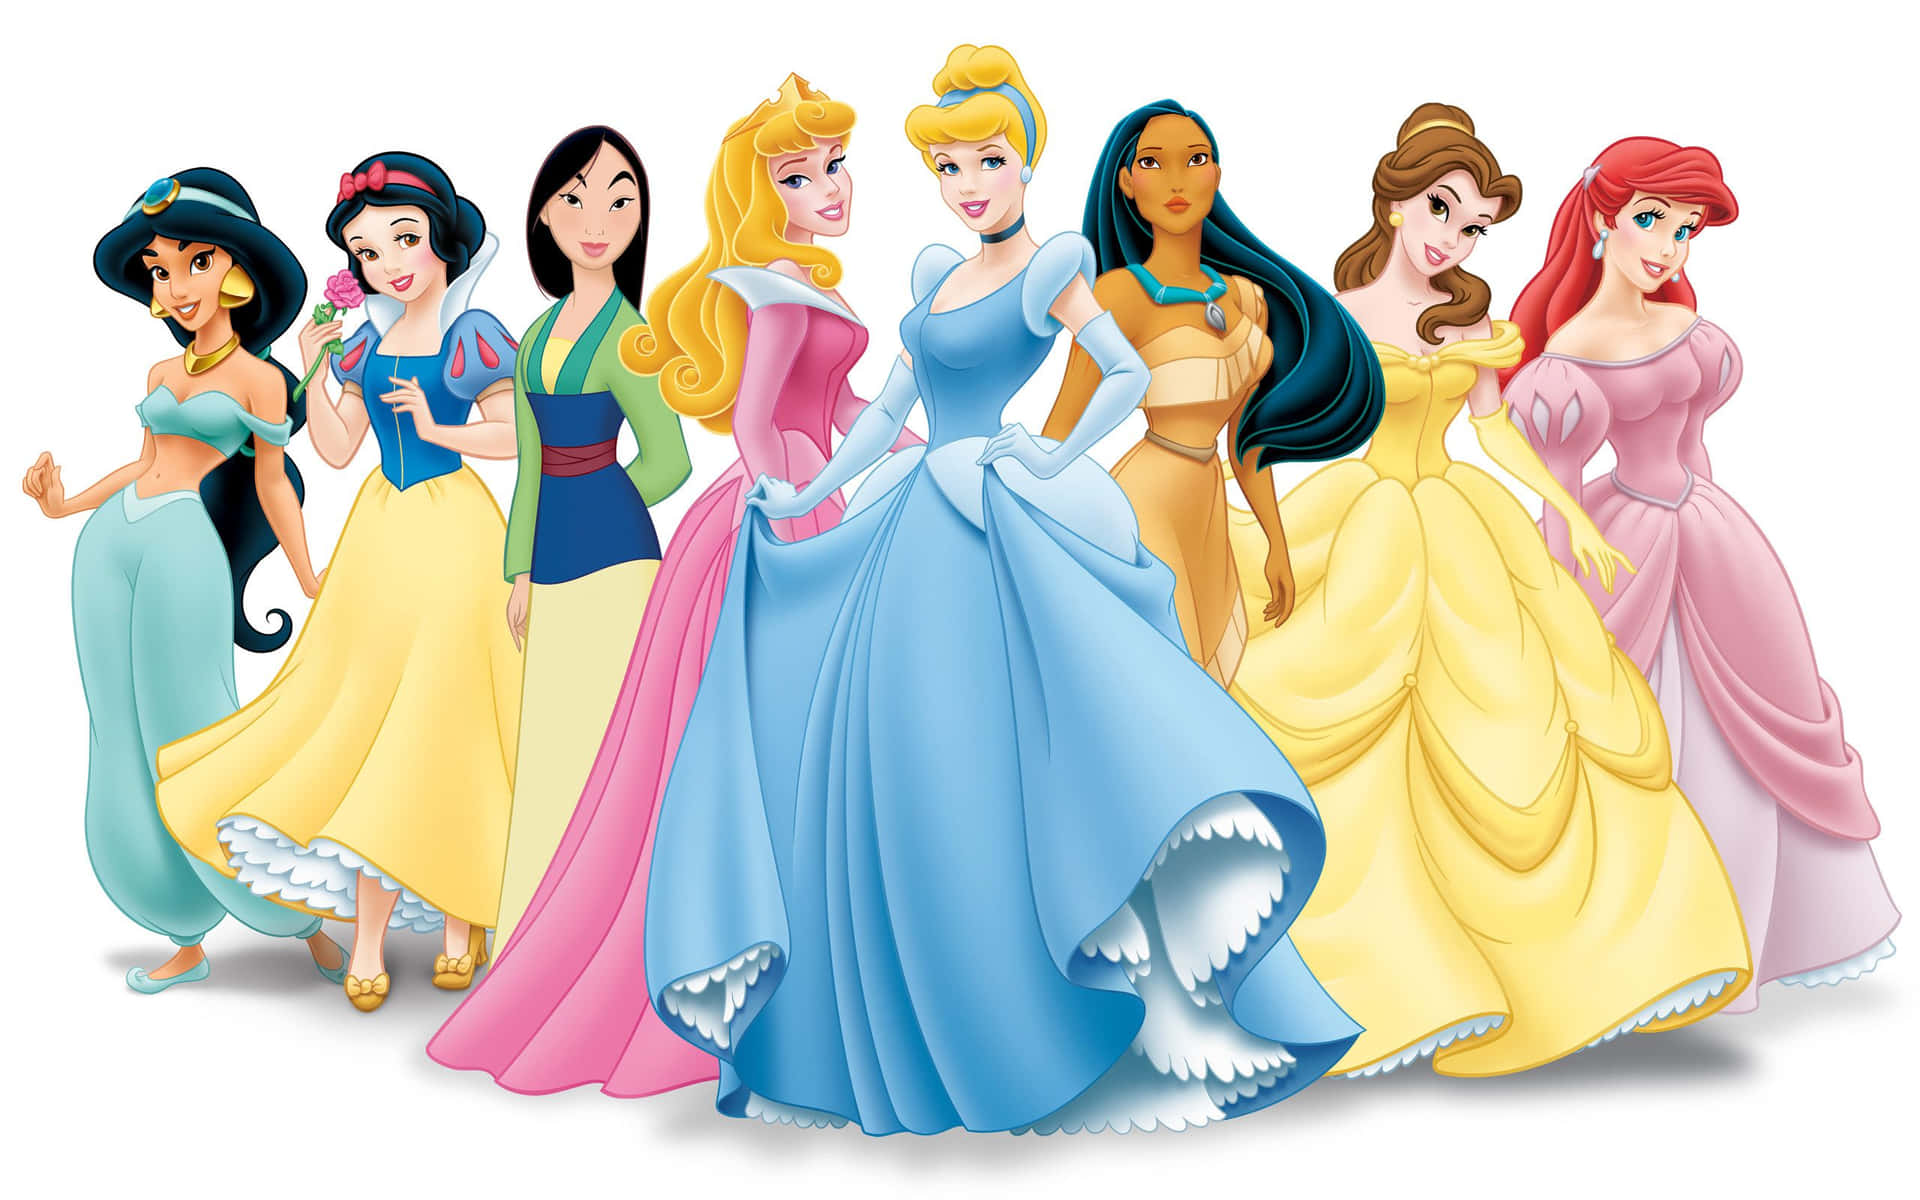 Imagende Vestidos Y Trajes De Las Princesas De Disney